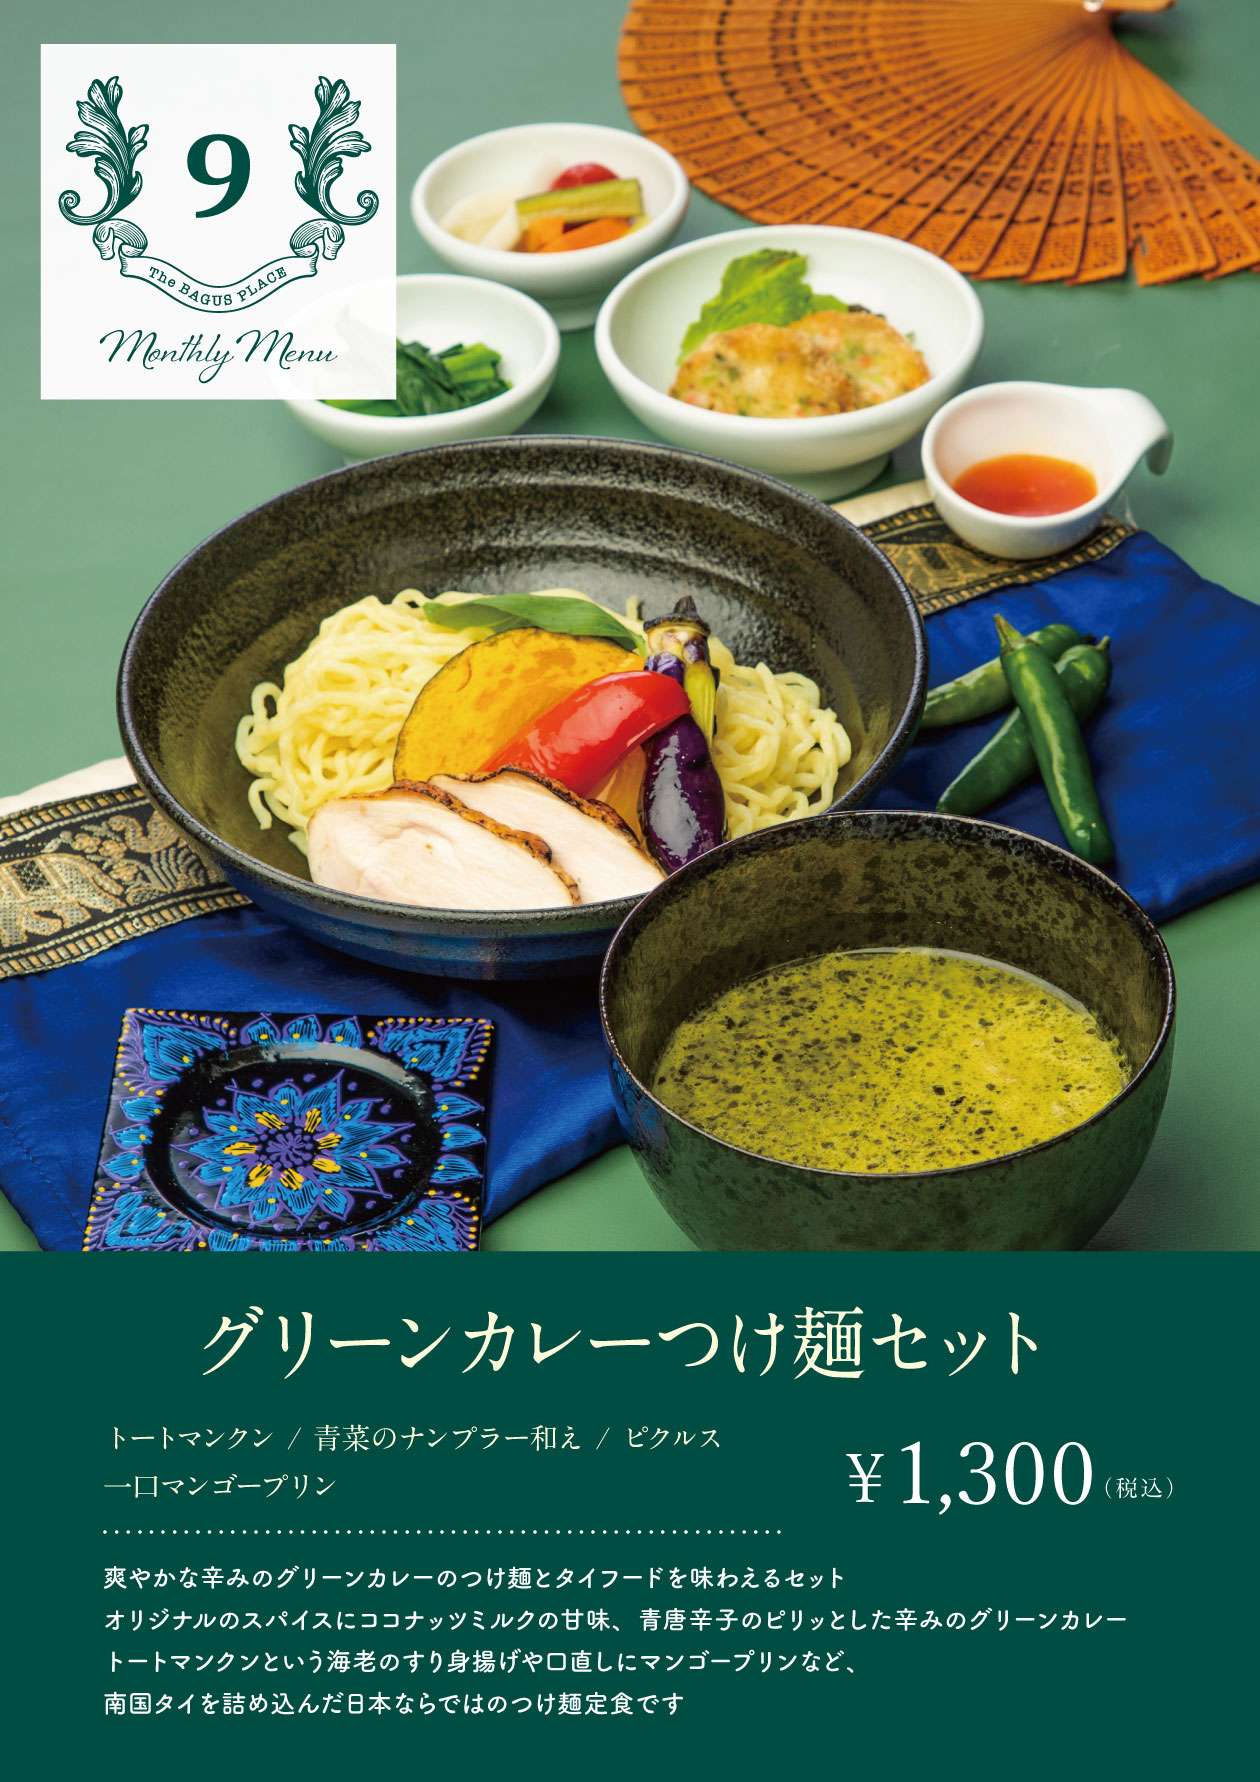 グリーンカレー✕つけ麺！東京・銀座「バグースプレイス」で「グリーンカレーつけ麺セット」